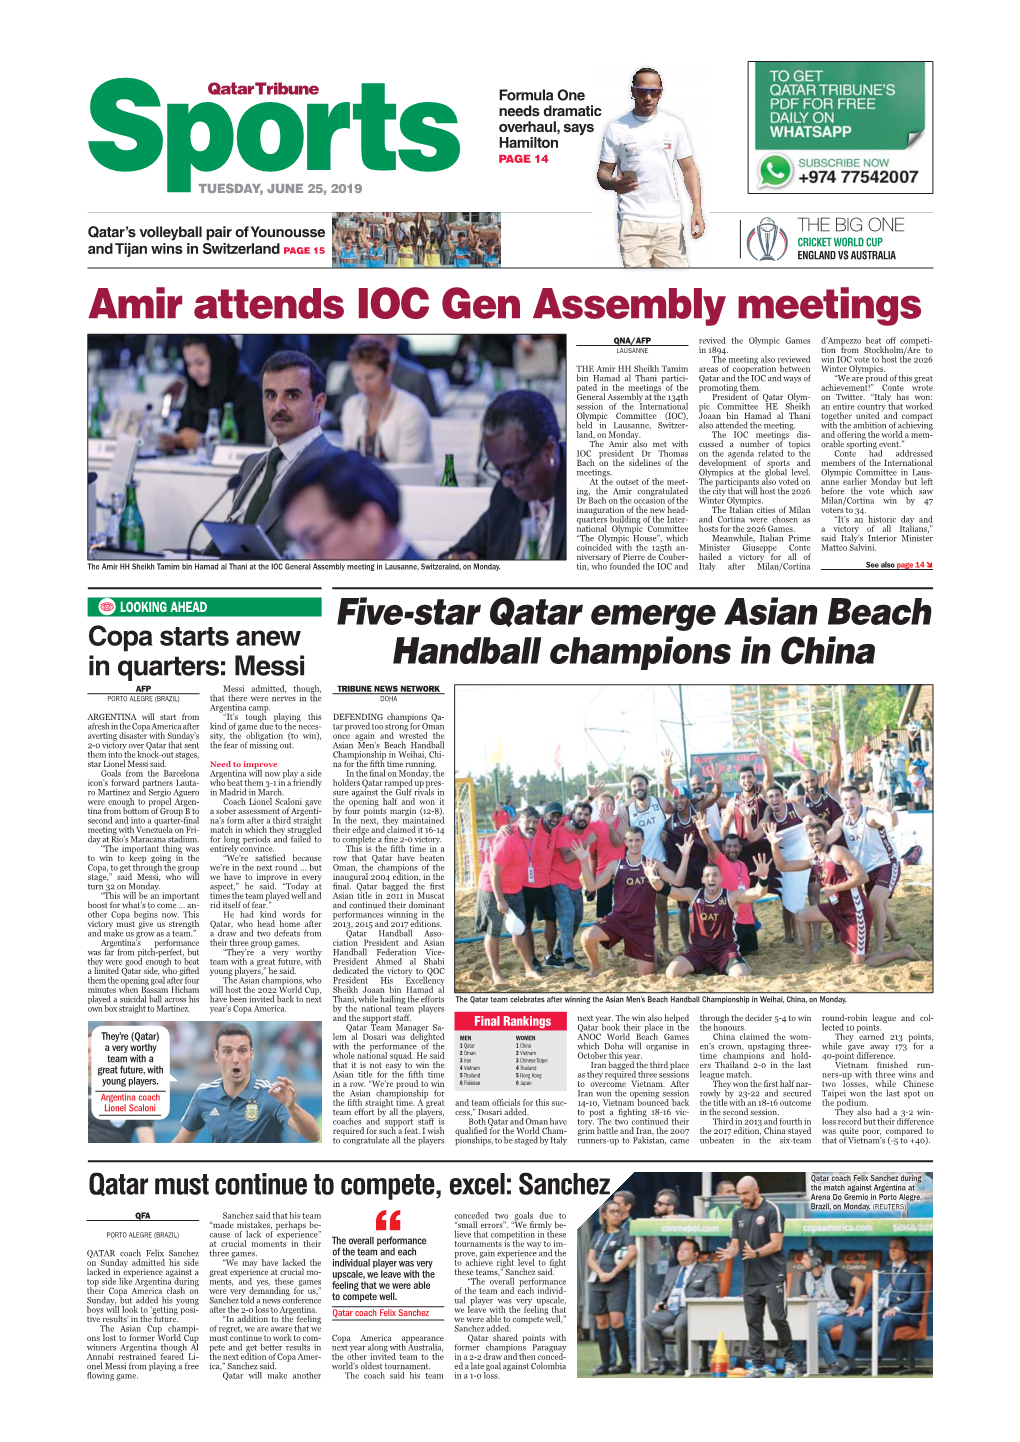 Amir Attends IOC Gen Assembly Meetings